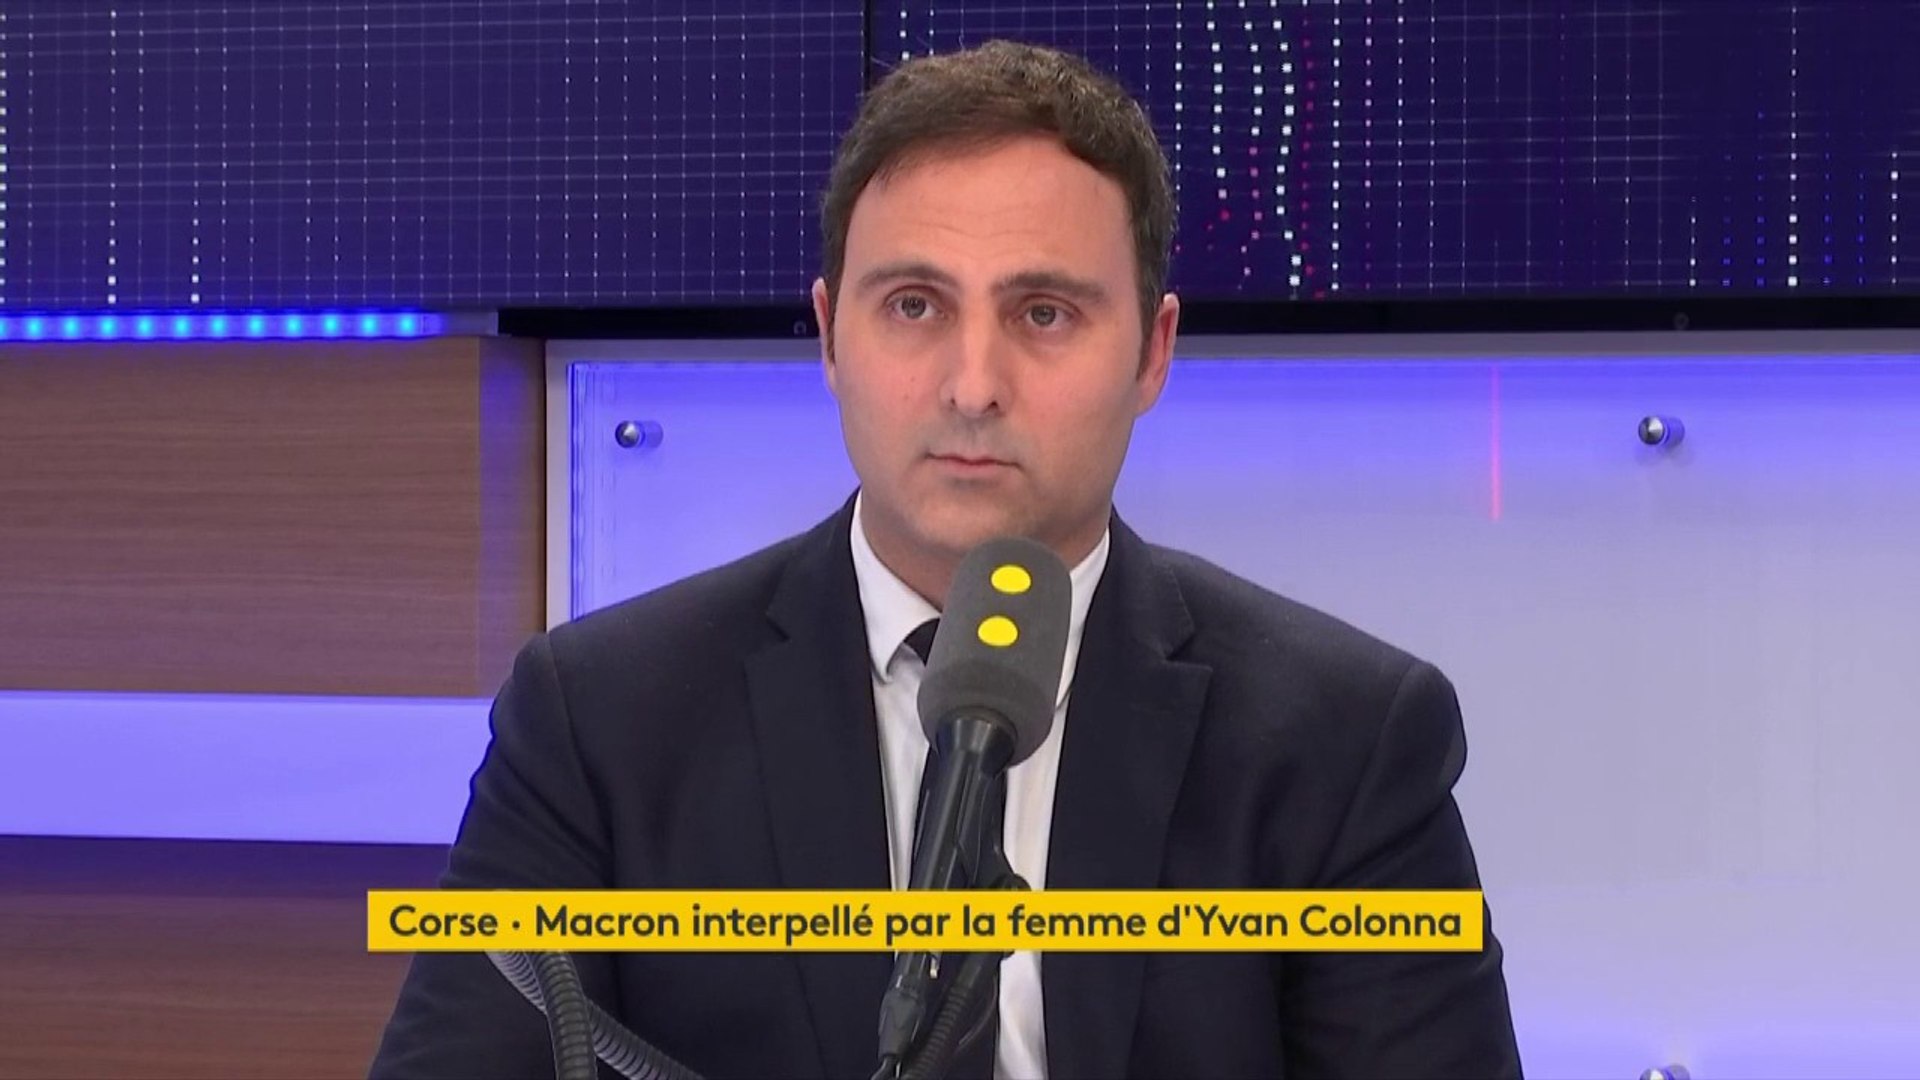 Emmanuel Macron interpellé par la femme d'Yvan Colonna : "Personne ne peut  se laisser déborder uniquement par les émotions", estime Eduardo  Rihan-Cypel, secrétaire national du PS - Vidéo Dailymotion